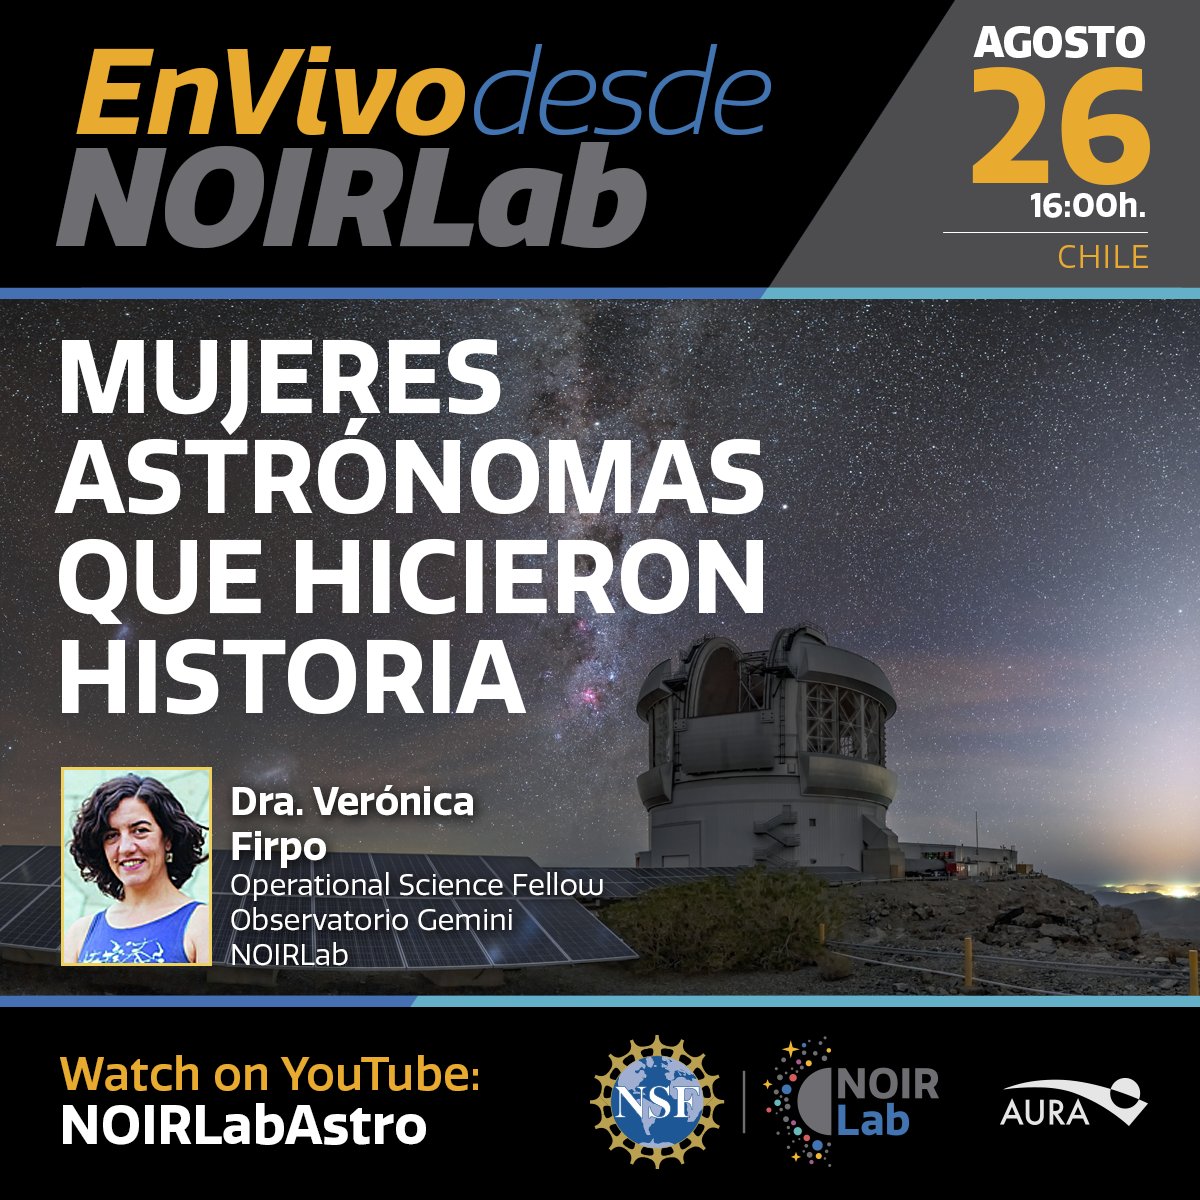 En unos minutos Verónica Firpo nos presentará su charla online 'Mujeres astrónomas que hicieron historia' en youtube.com/noirlabastro !
#DescubriendoJuntos #EnVivoDesdeNOIRLab #MujeresEnAstronomía